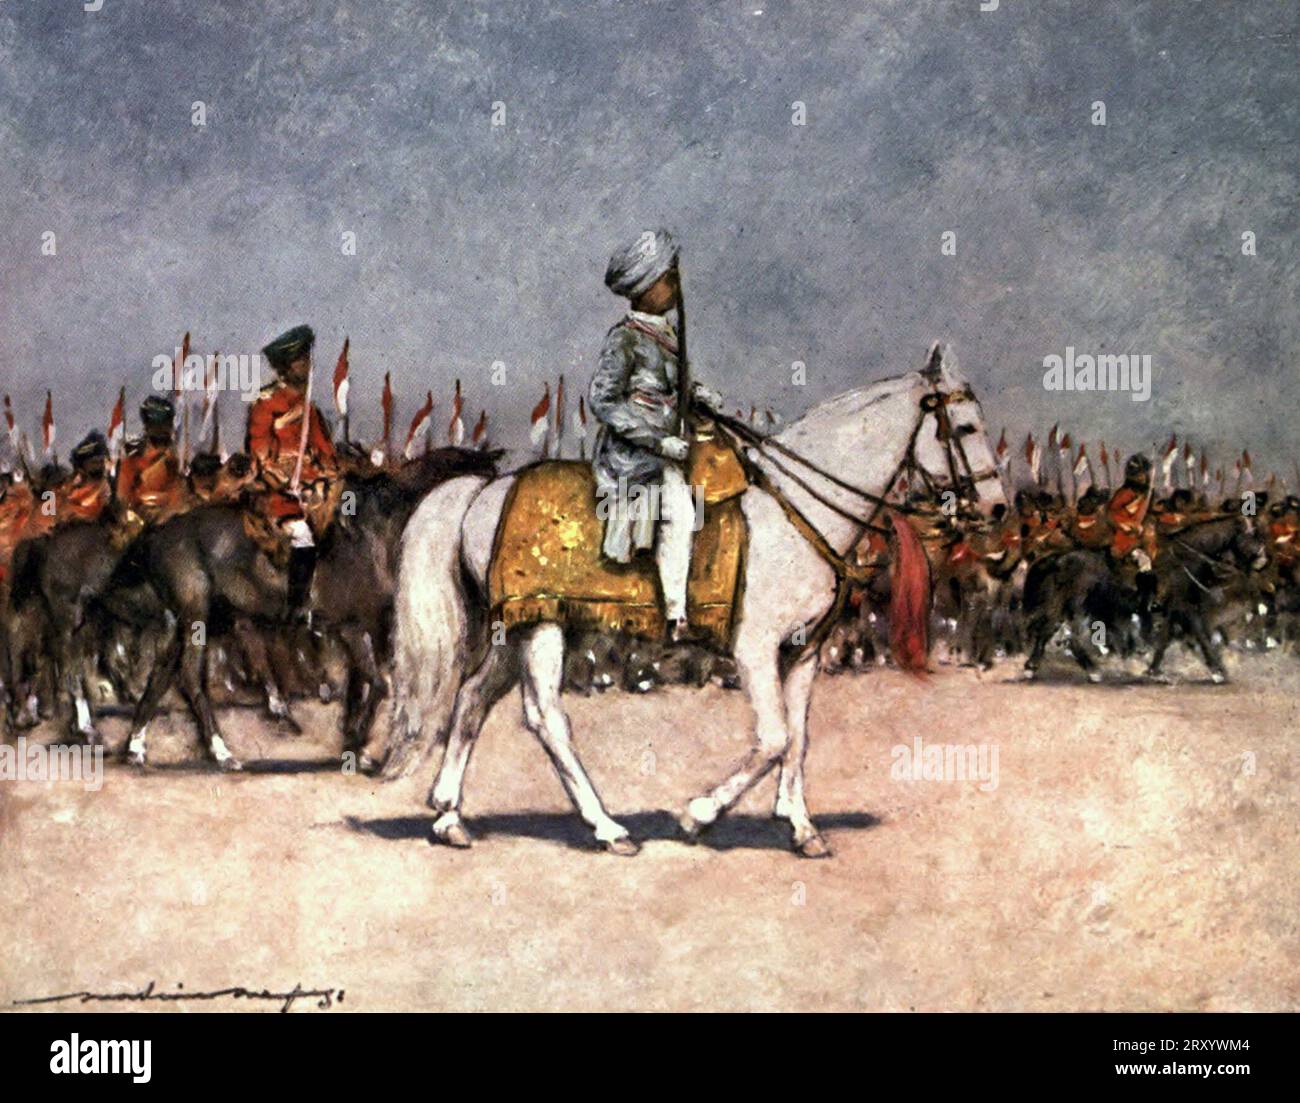 Son Altesse le Maharaja de Patiala - le petit Maharaja de onze ans s'est porté avec une grande dignité et gravité et a salué le vice-roi avec sa petite épée avec tout le calme du plus vieux de ses guerriers - Durbar, Raj britannique, 1903 Banque D'Images